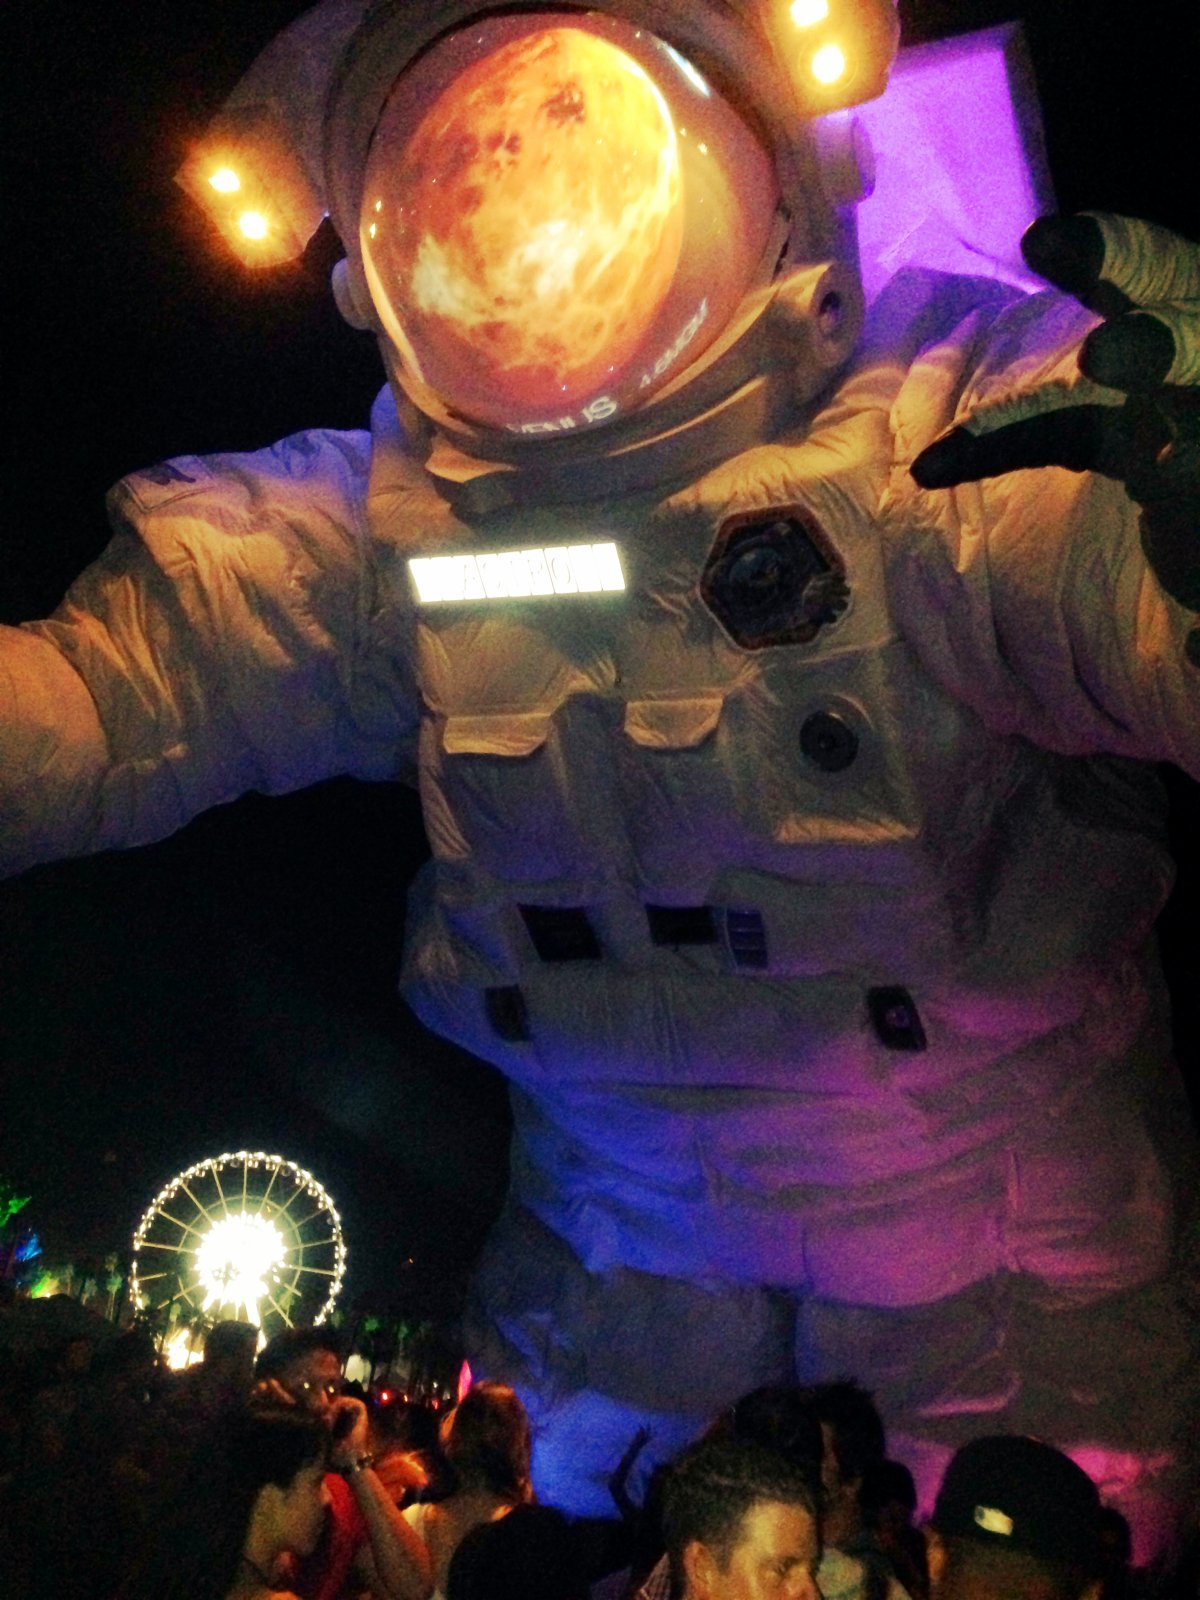 A roaming astronaut at Coachella.